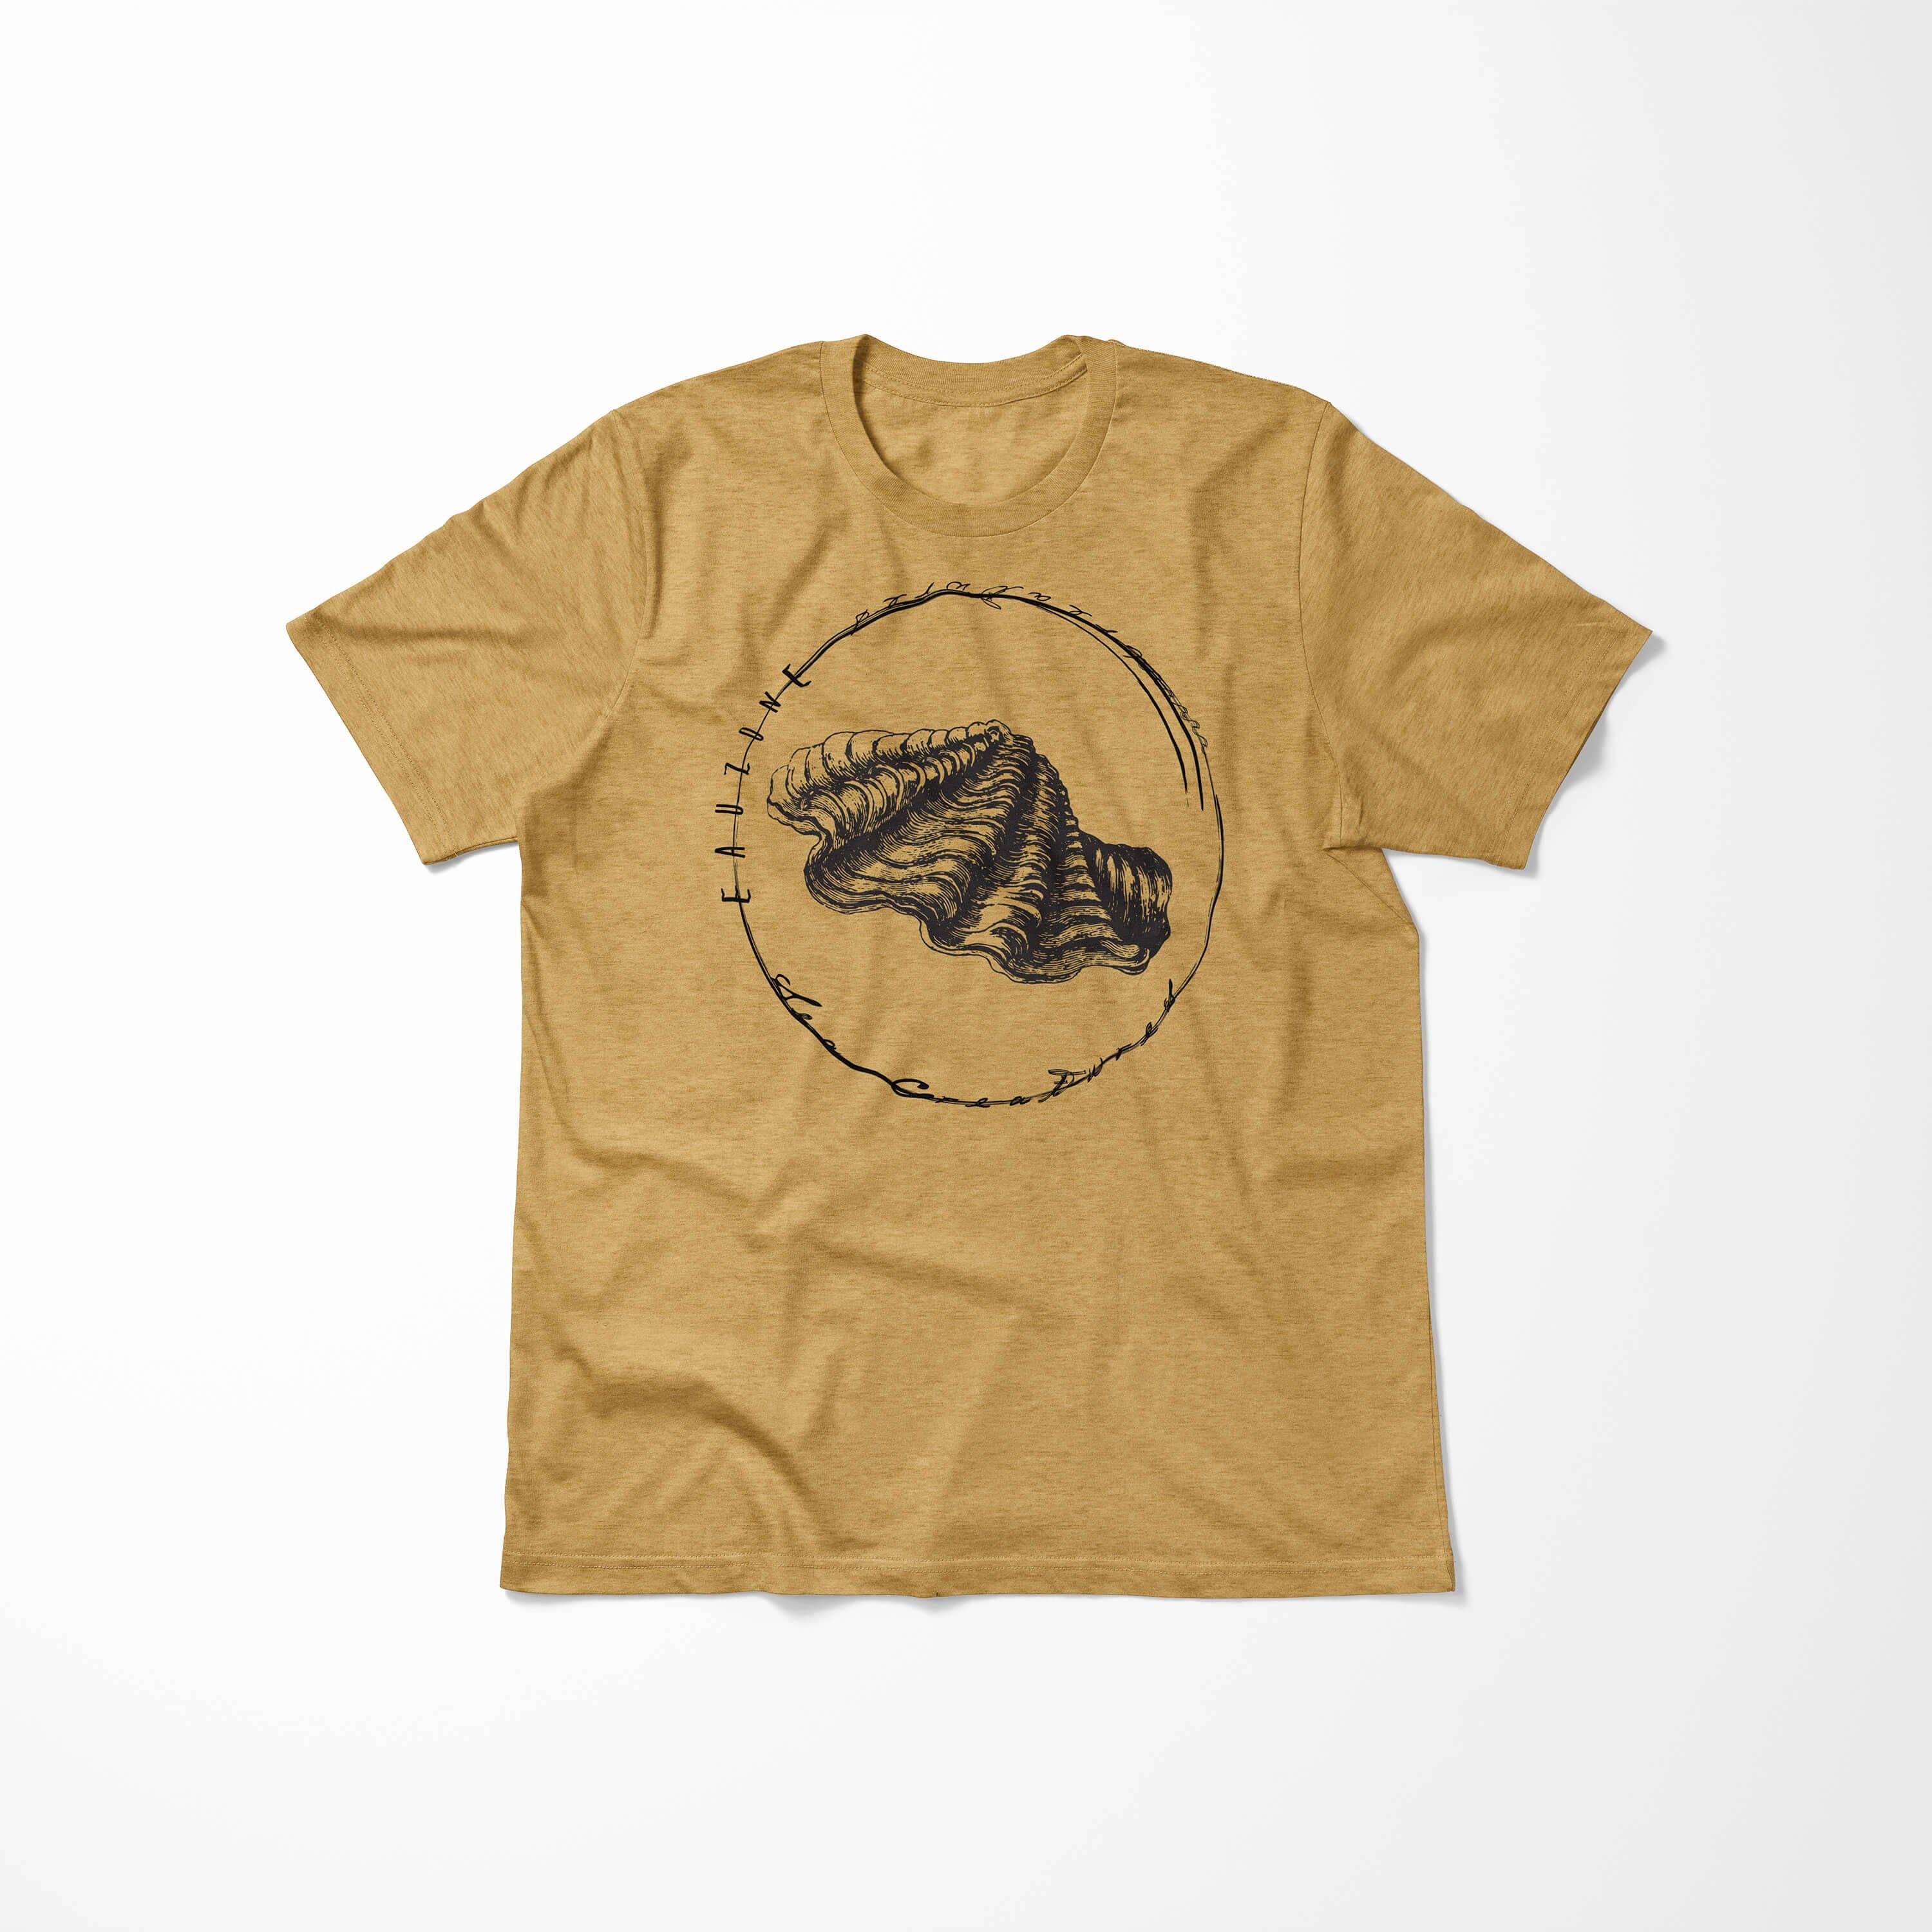 - 088 Struktur und Fische T-Shirt Sea Sea Tiefsee Serie: Sinus Gold sportlicher Antique T-Shirt Schnitt feine / Art Creatures,